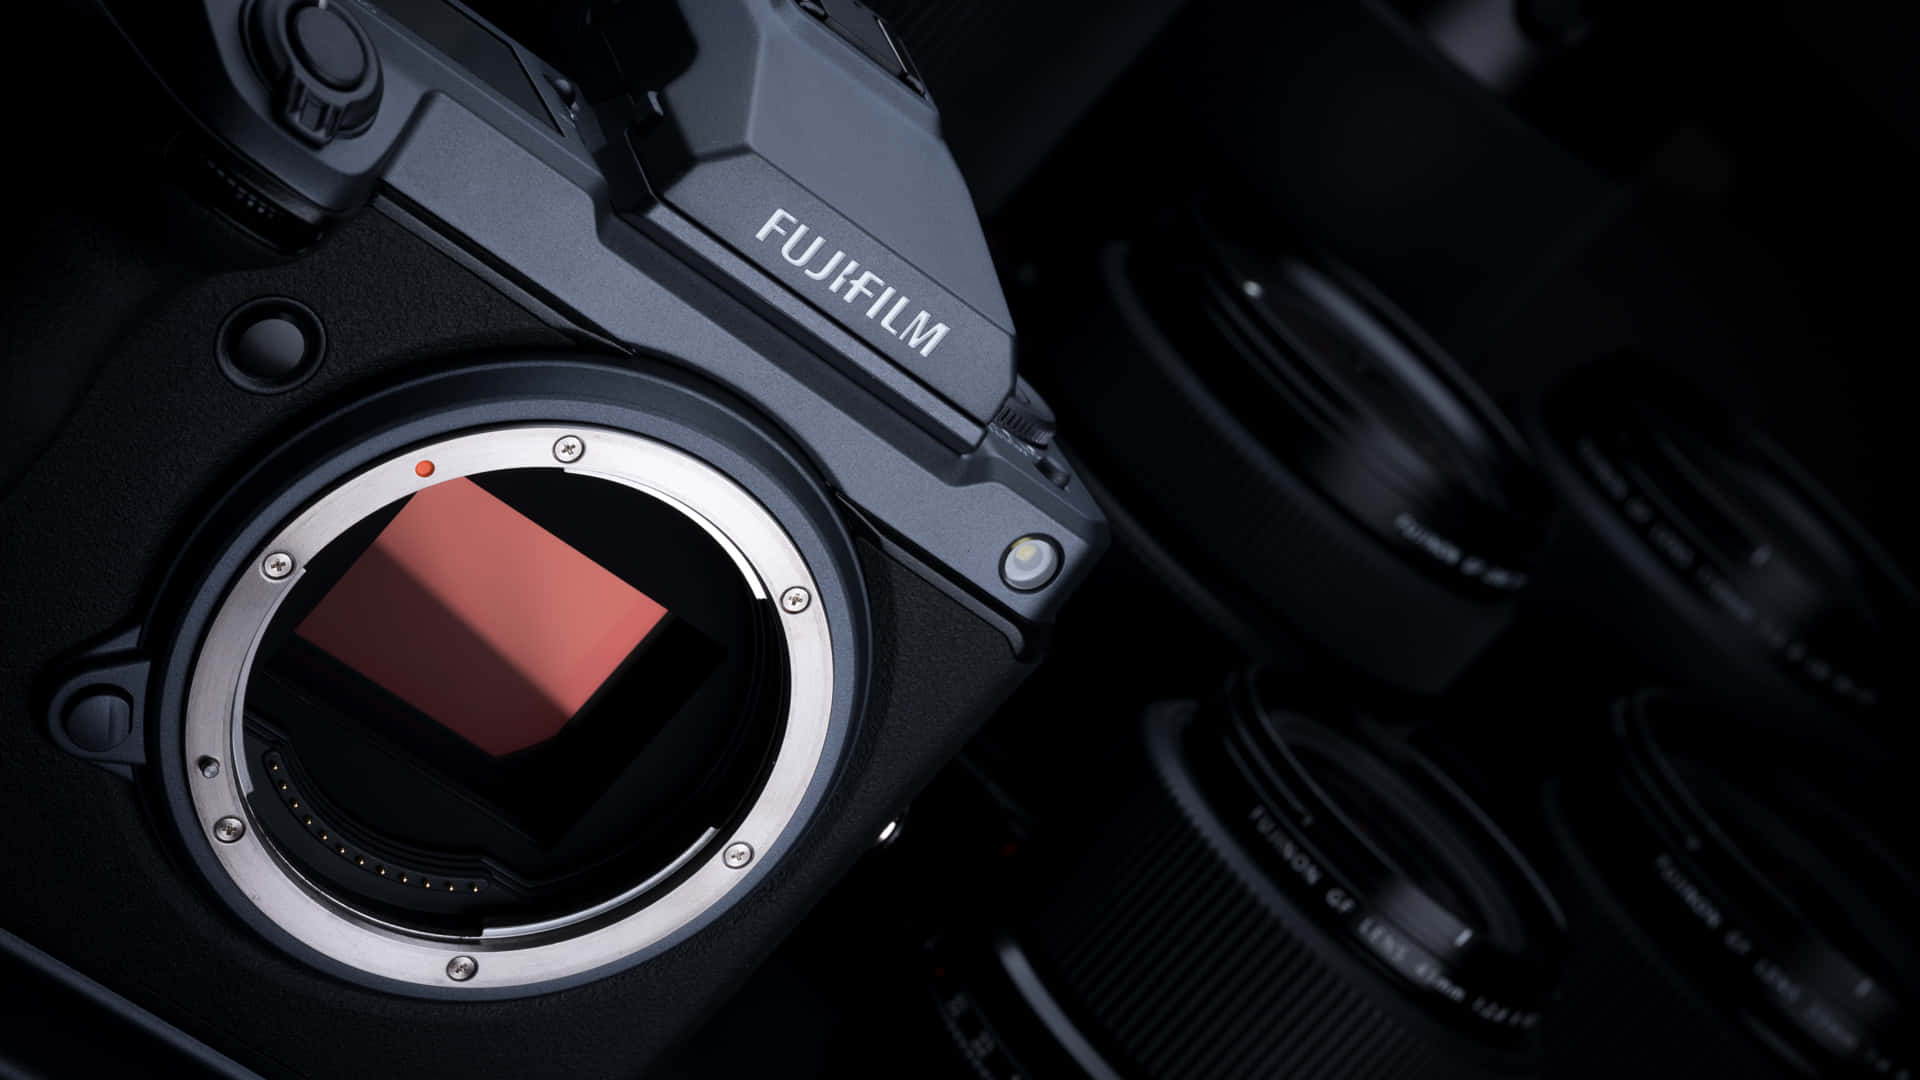 Fujifilm Camera And Lens GFX Background